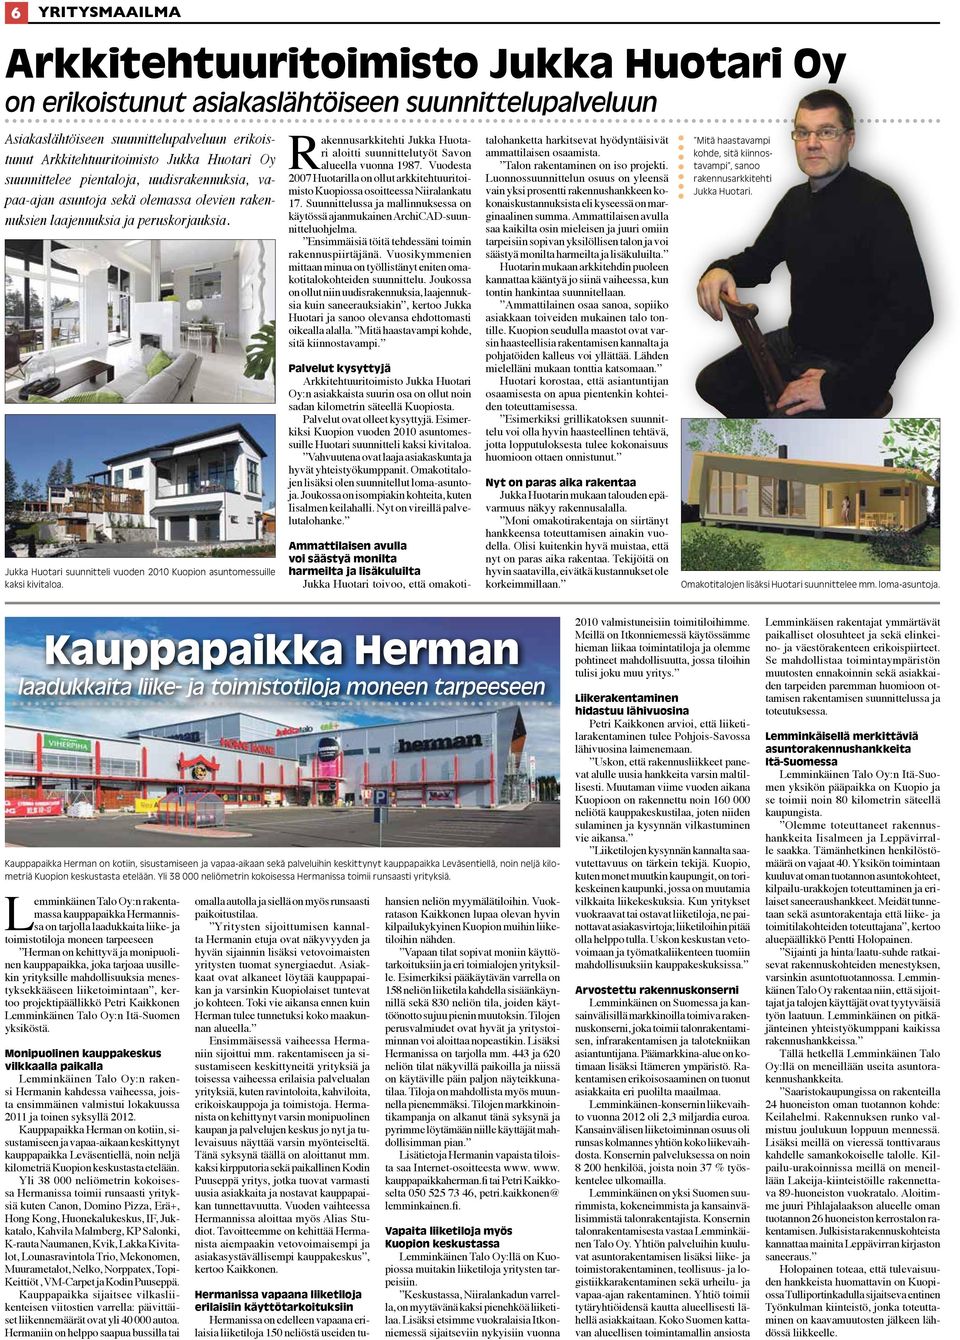 Jukka Huotari suunnitteli vuoden 2010 Kuopion asuntomessuille kaksi kivitaloa. Rakennusarkkitehti Jukka Huotari aloitti suunnittelutyöt Savon alueella vuonna 1987.